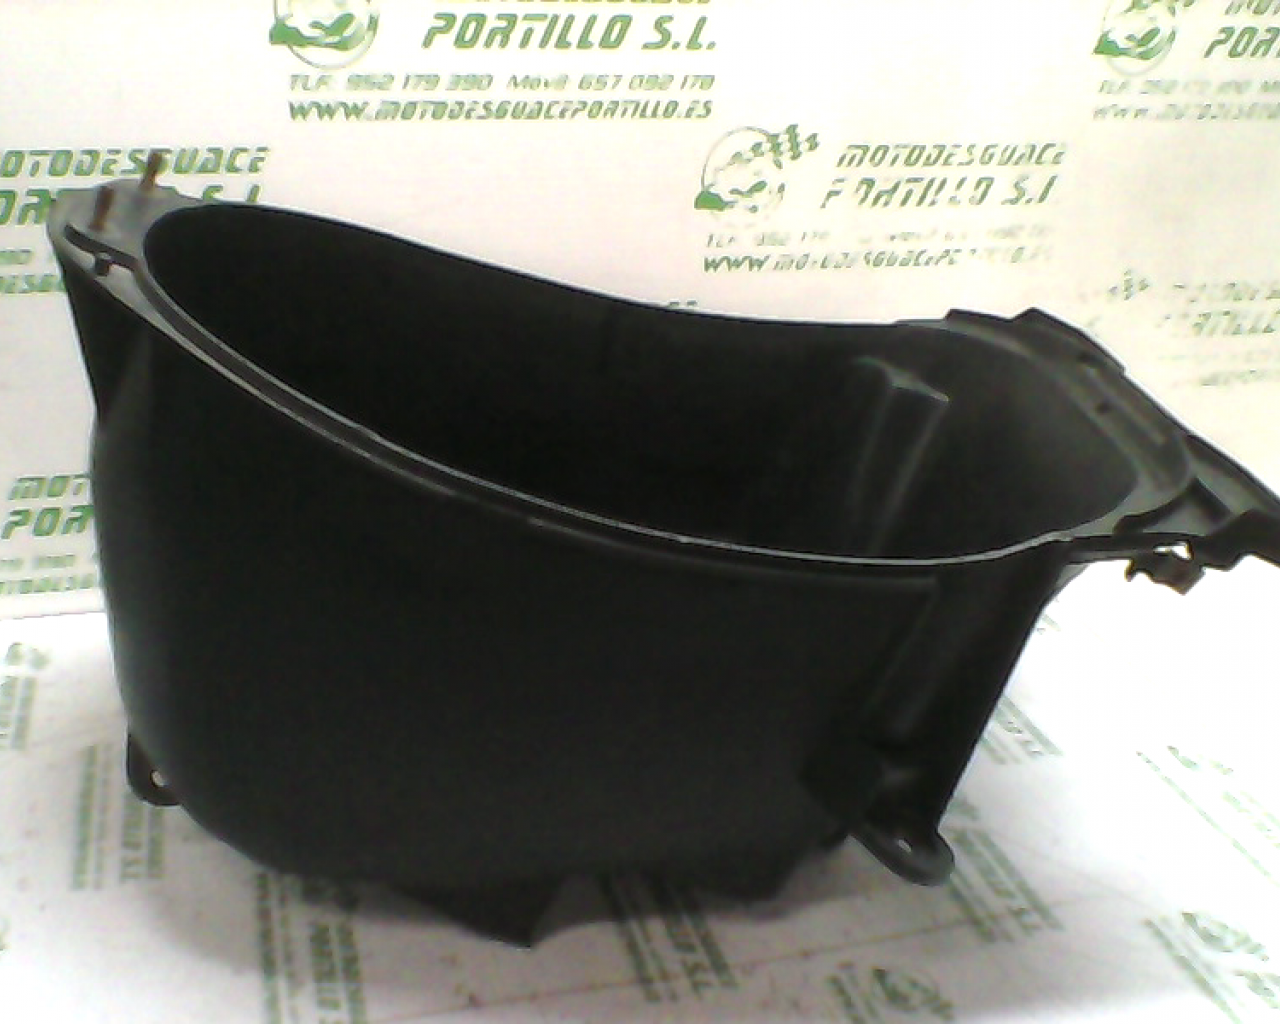 Porta-casco PIONNER QM-125-T (2009-2010)